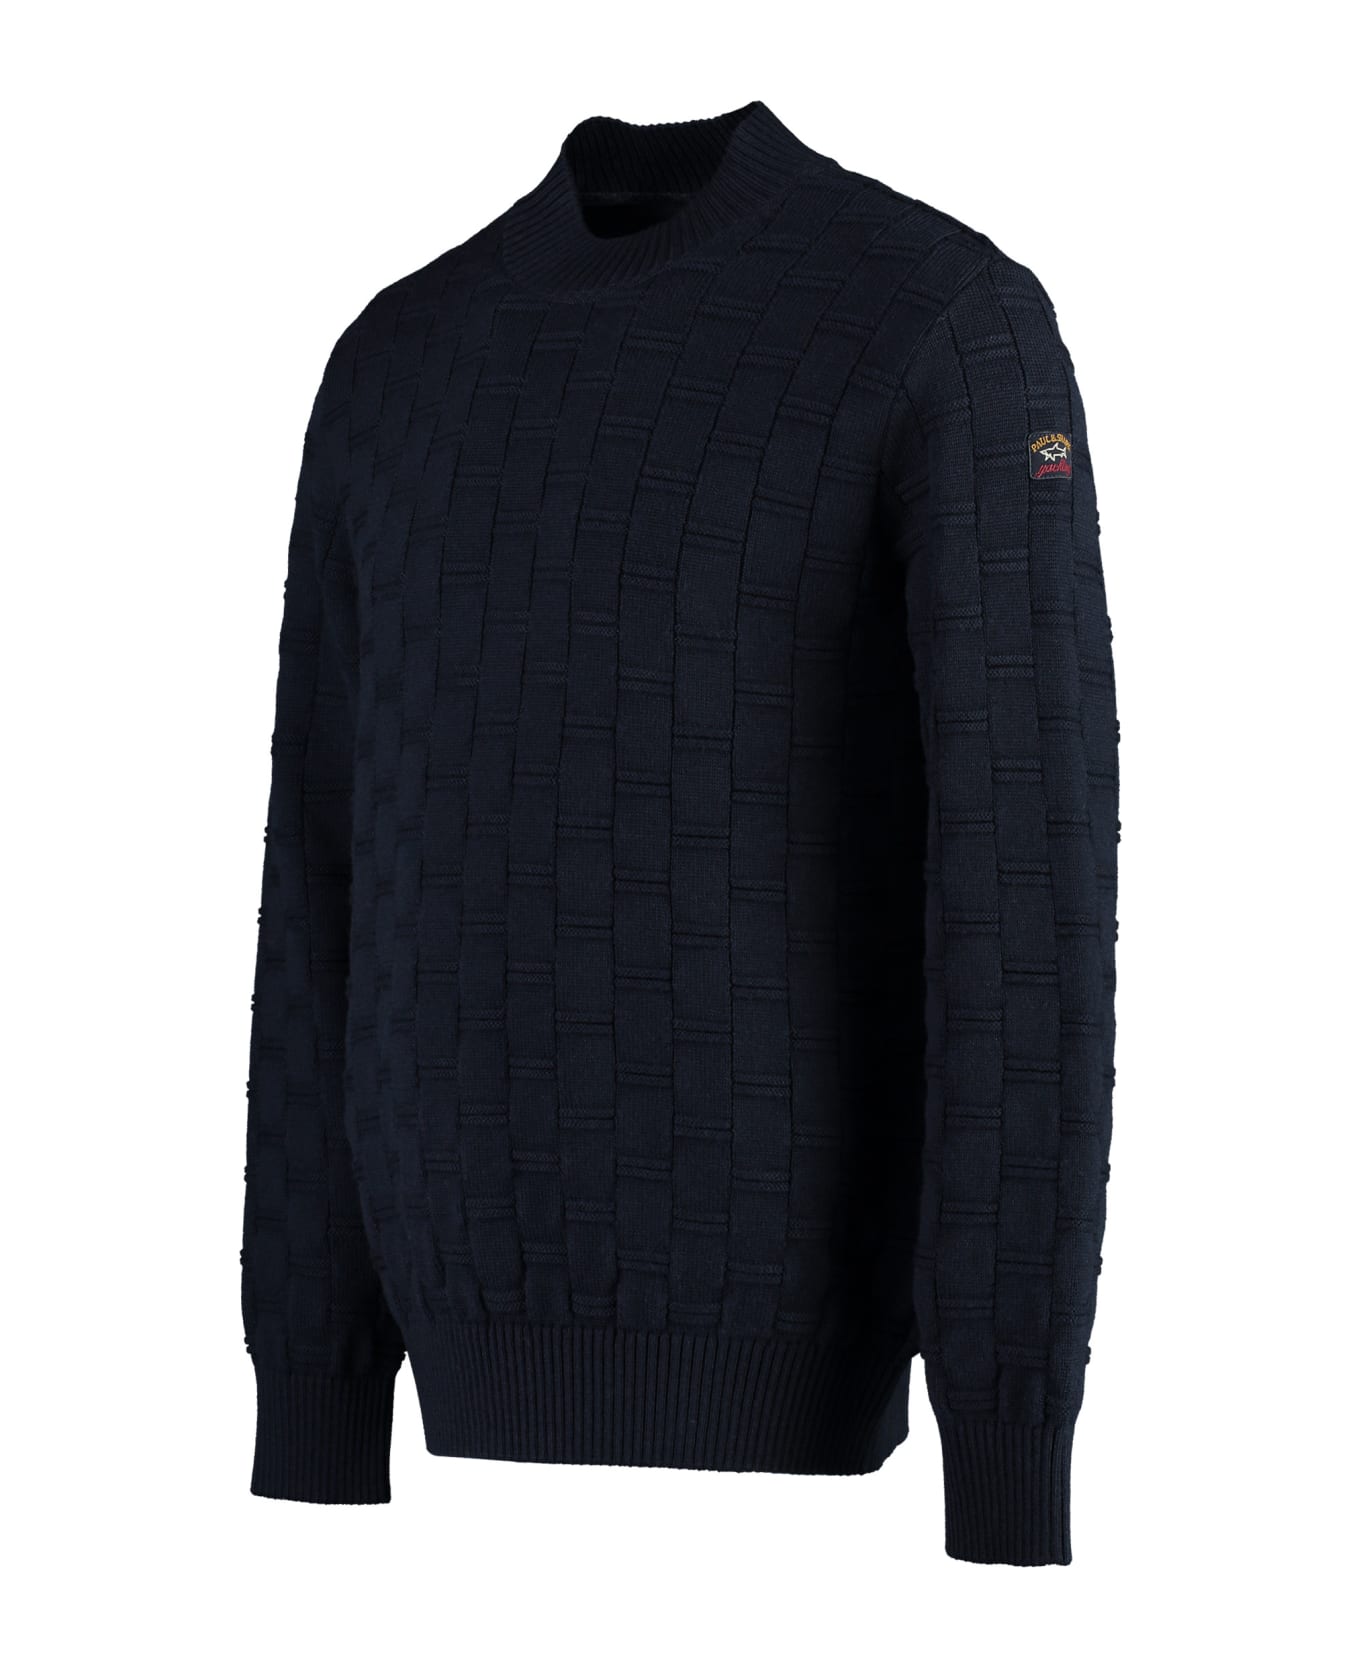 Paul&Shark Virgin Wool Crew-neck Sweater - blue ニットウェア